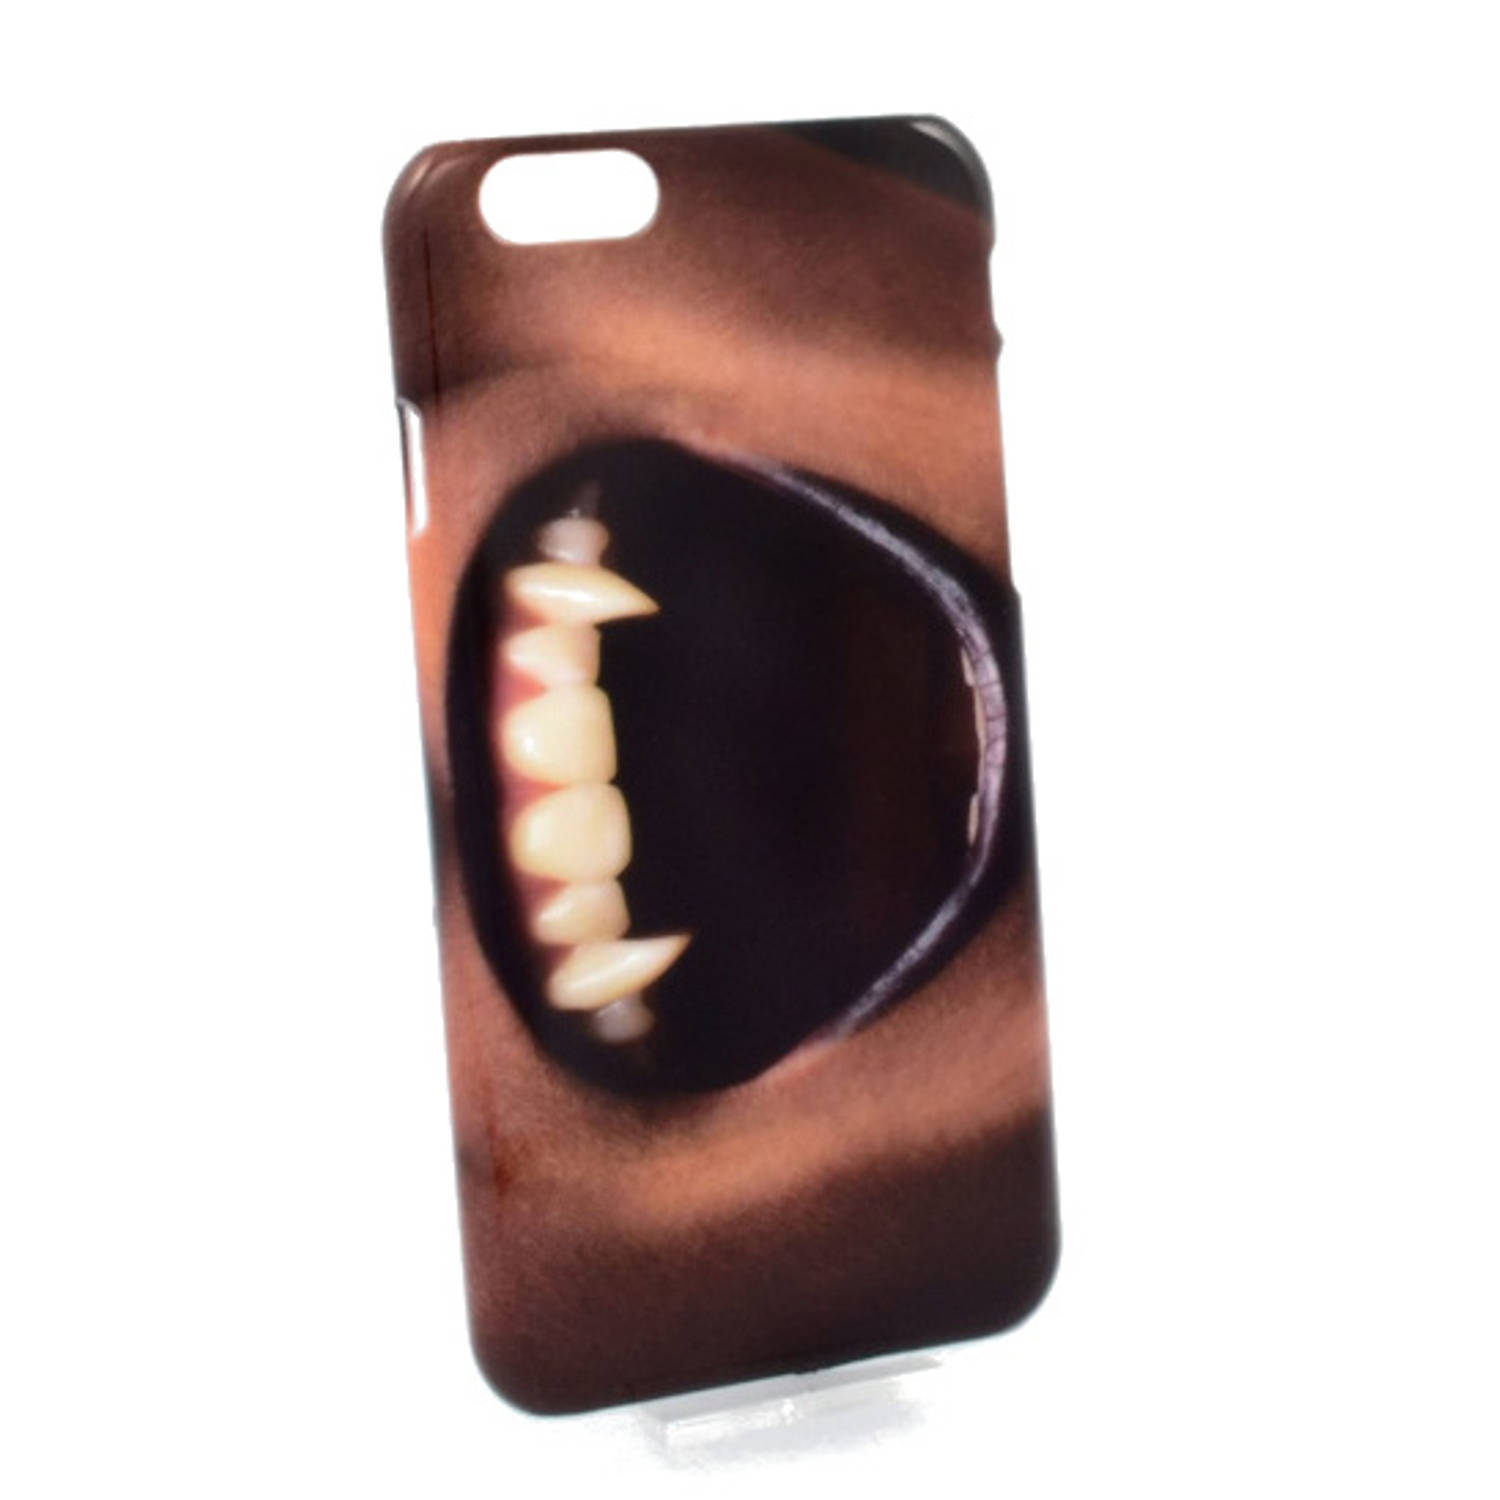 Giggle Beaver telefoonhoesje vampier iPhone 6 polycarbonaat zwart/rood